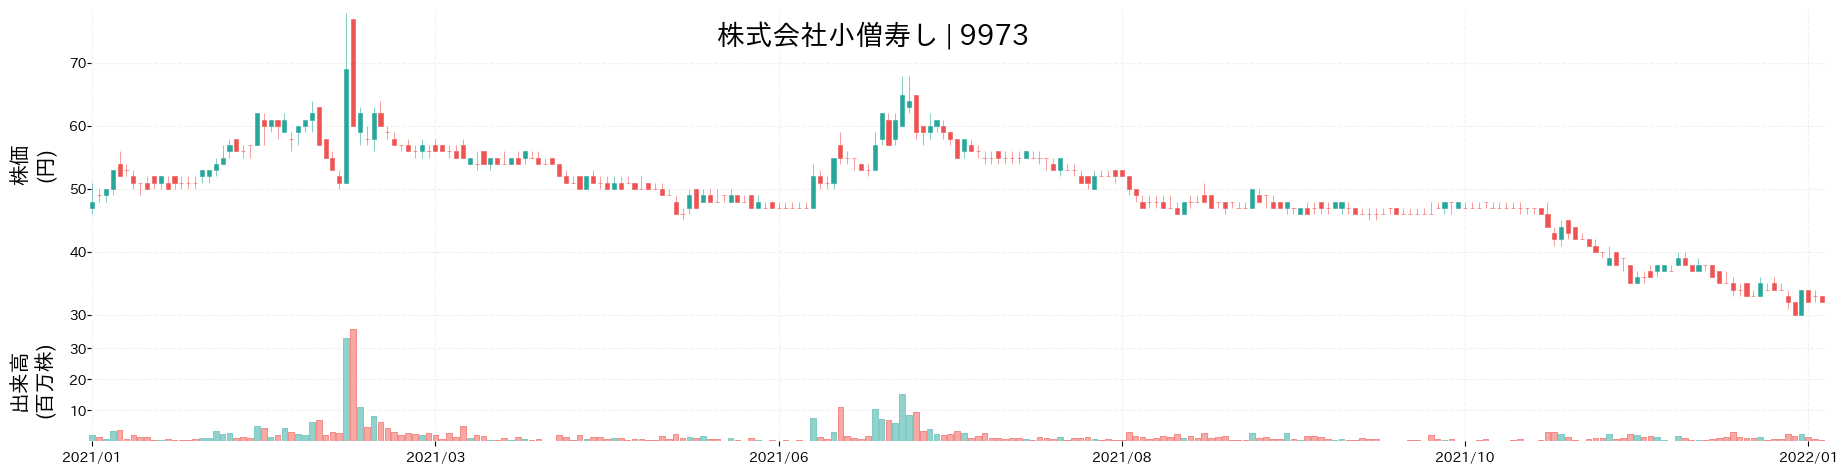 小僧寿しの株価推移(2021)